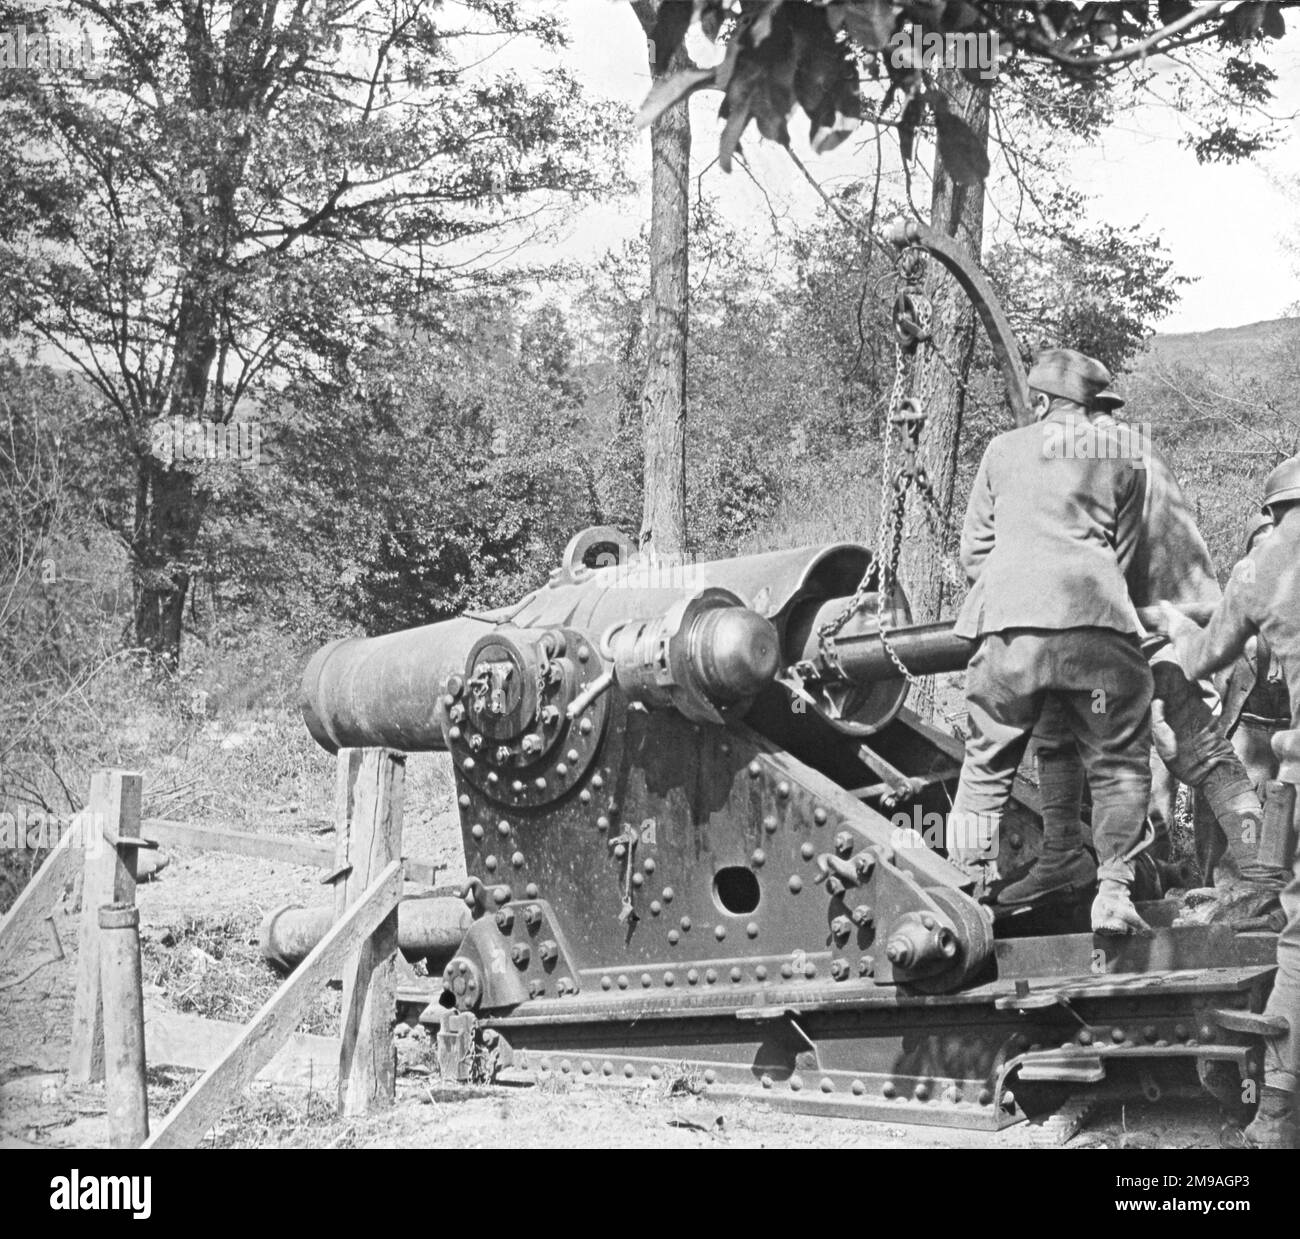 Un Mortier de 270 mm modello 1885 che viene caricato al Bois de Givry a sud di Auxerre. (Immagine RH di una coppia stereo predisposta per un visualizzatore a occhio incrociato, dove l'occhio sinistro vede l'immagine a destra e vice cersa) Foto Stock